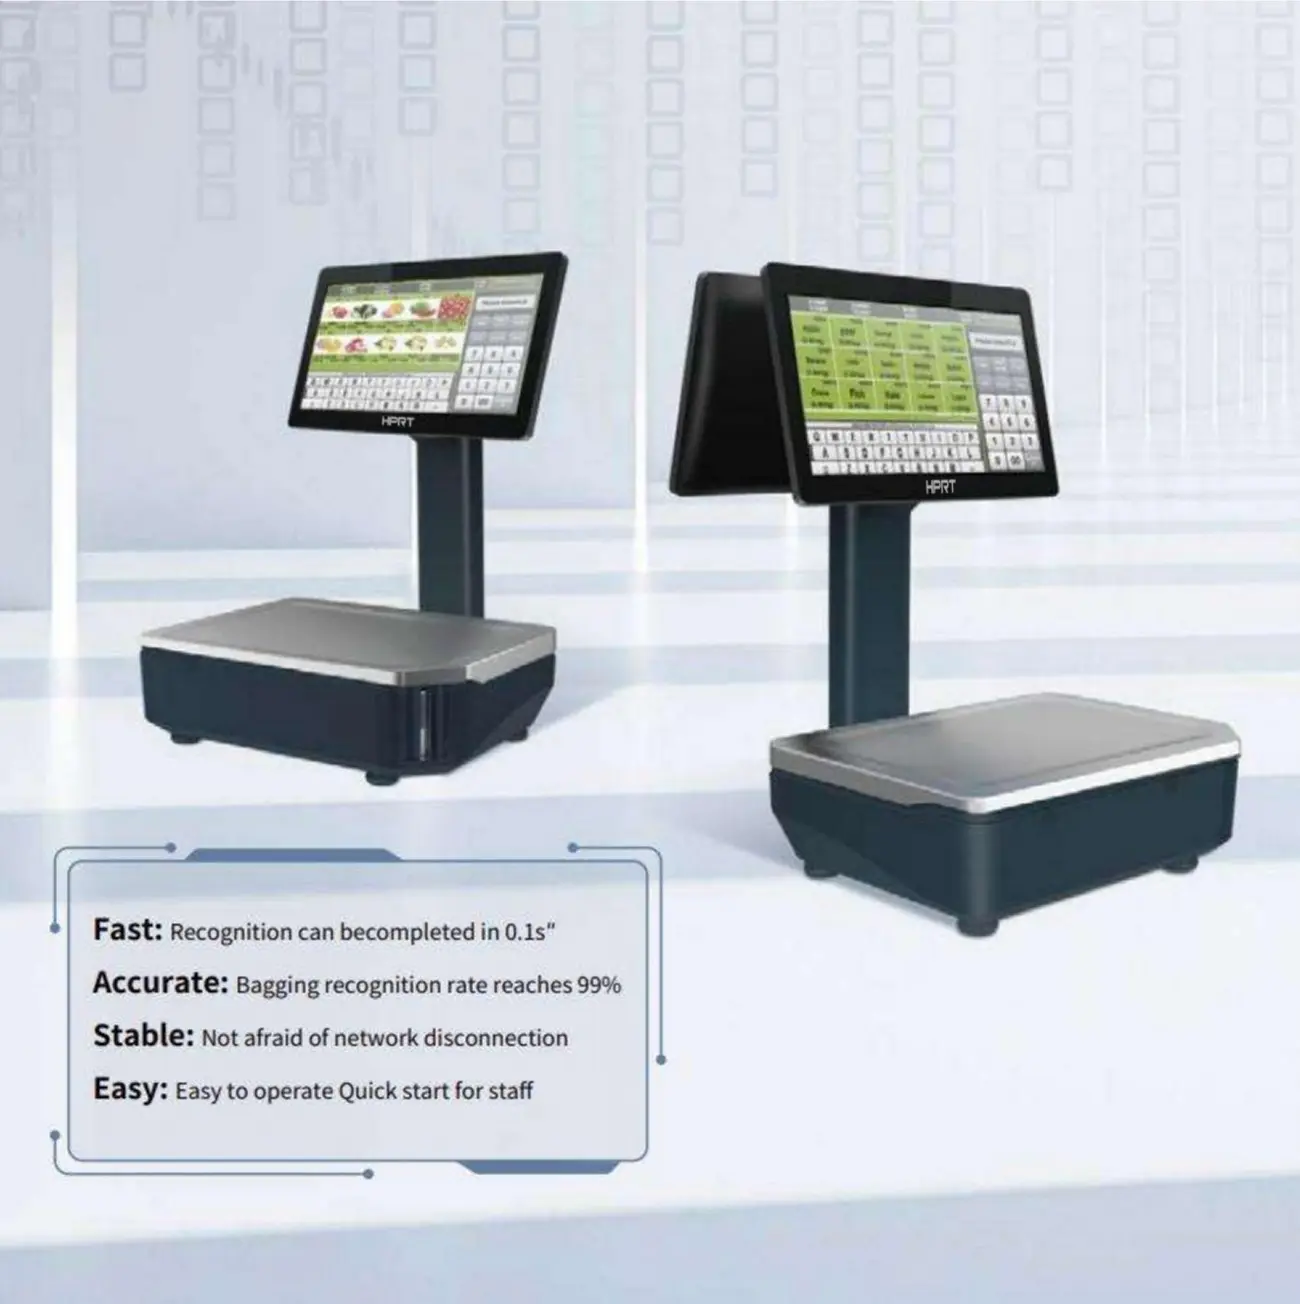 HPRT Neue digitale Supermarkt waage 14-Zoll-kapazitives Touchscreen-Fenster AI Smart POS-Waage Etiketten waage